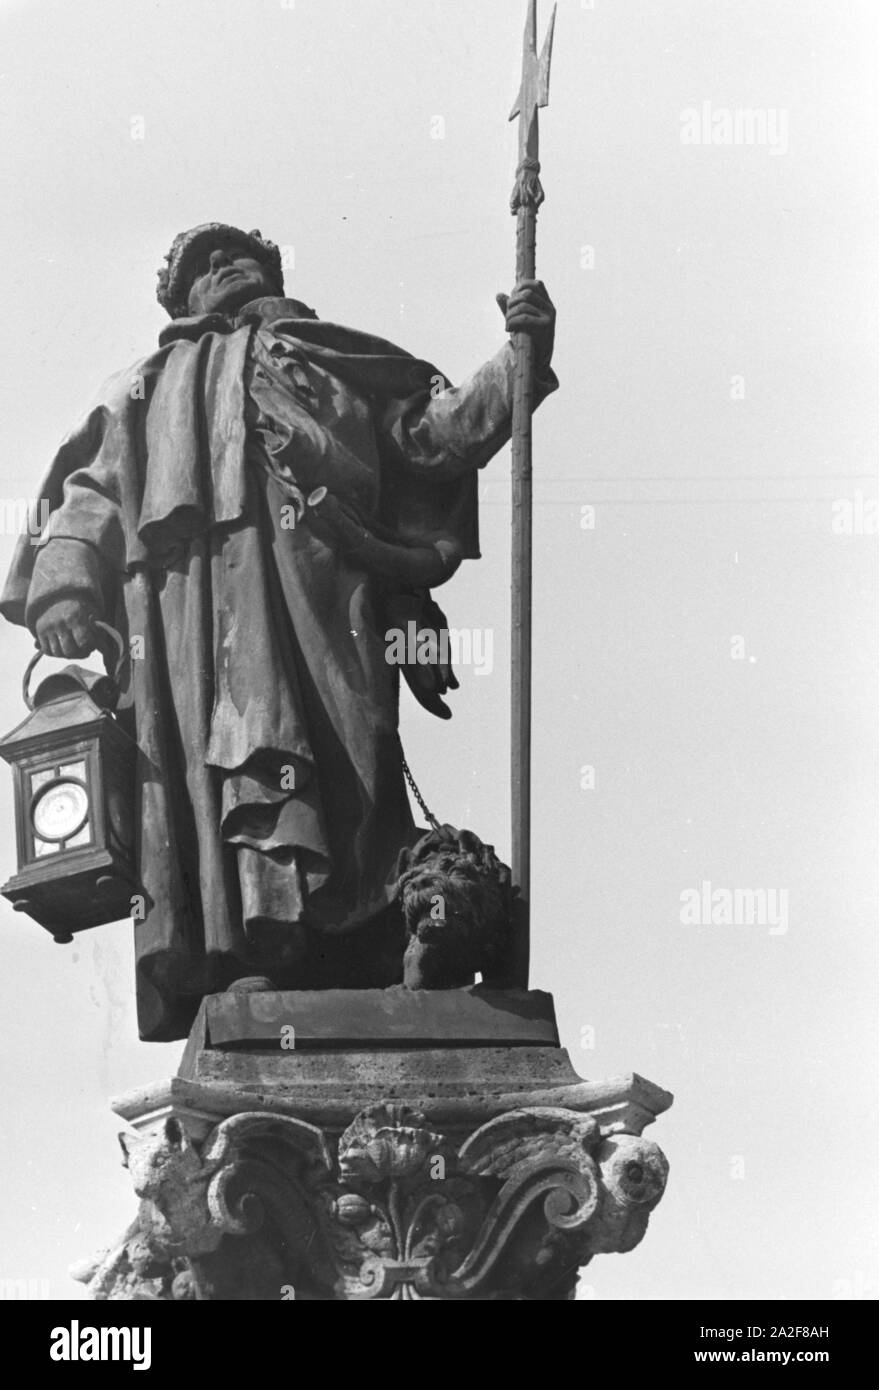 Der steinerne Nachtwächter mit dem Nachtwächterbrunnen in Stuttgart, Deutschland, 1930er Jahre. Der Stein Nachtwächter auf dem Nachtwächterbrunnen (Spritzschutz Brunnen) in Stuttgart, Deutschland 1930. Stockfoto